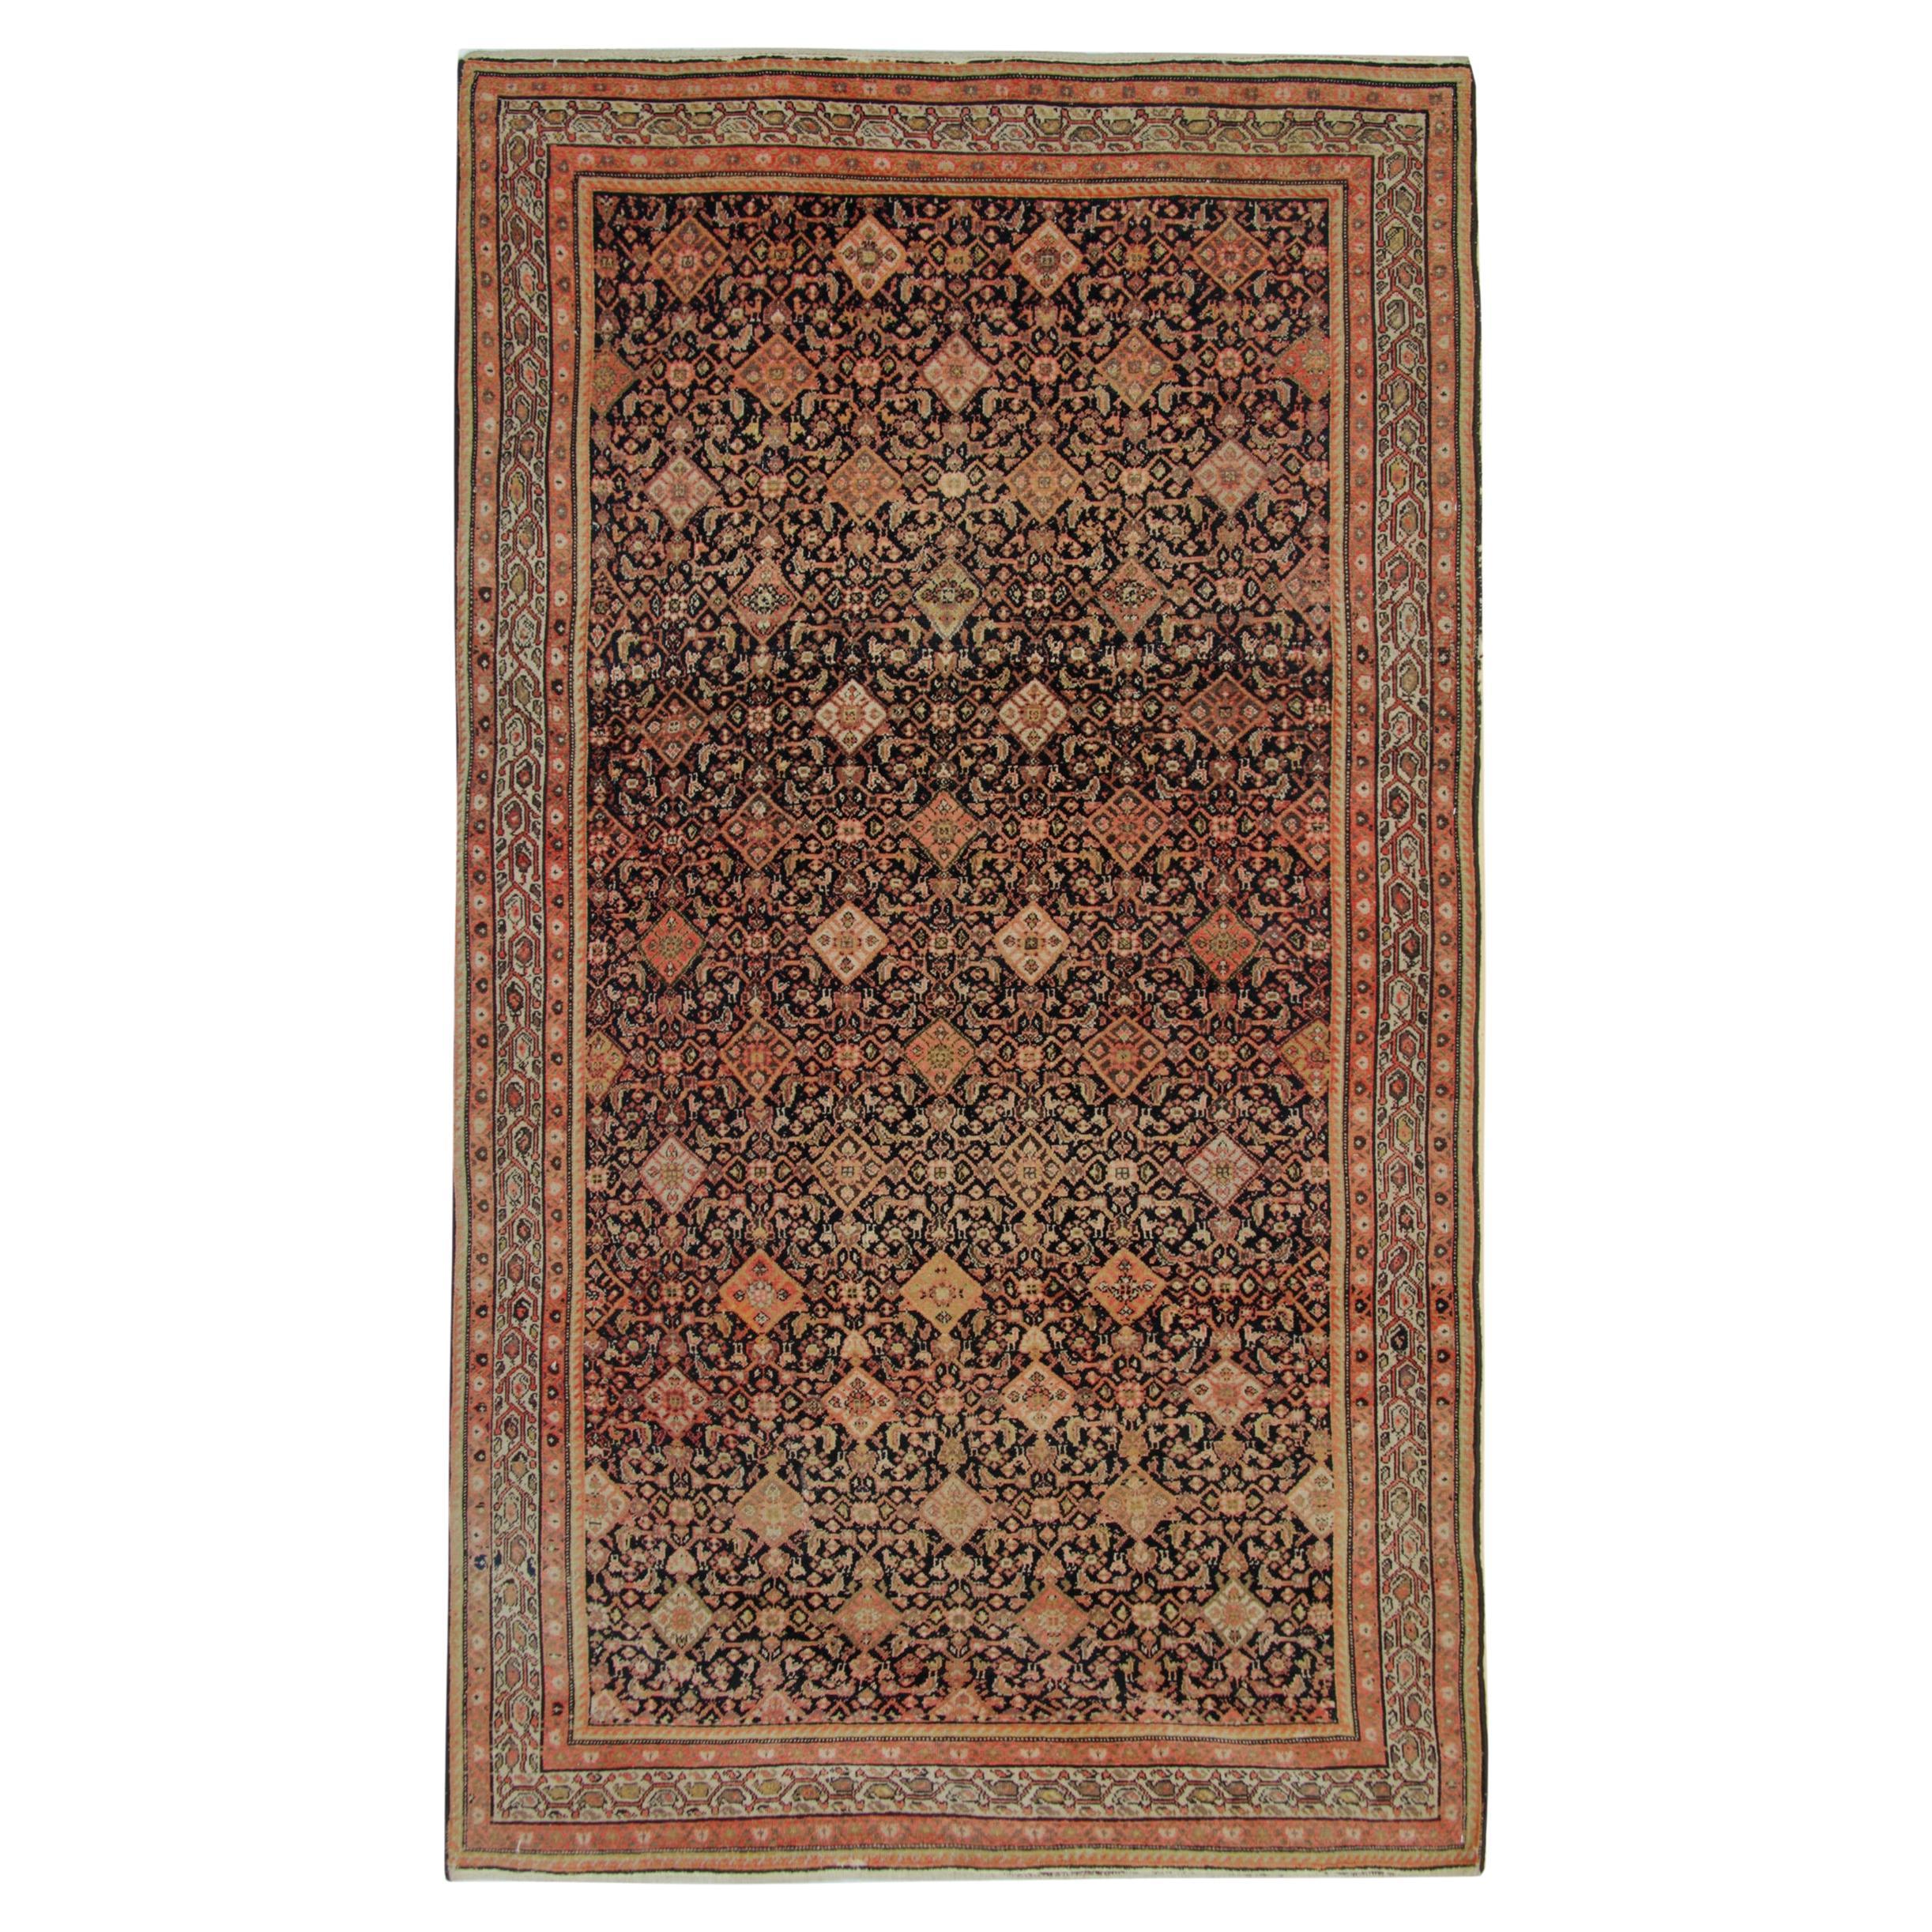 Handknotted Brown Rust Wool Living Room Rug Carpet Oriental Rug